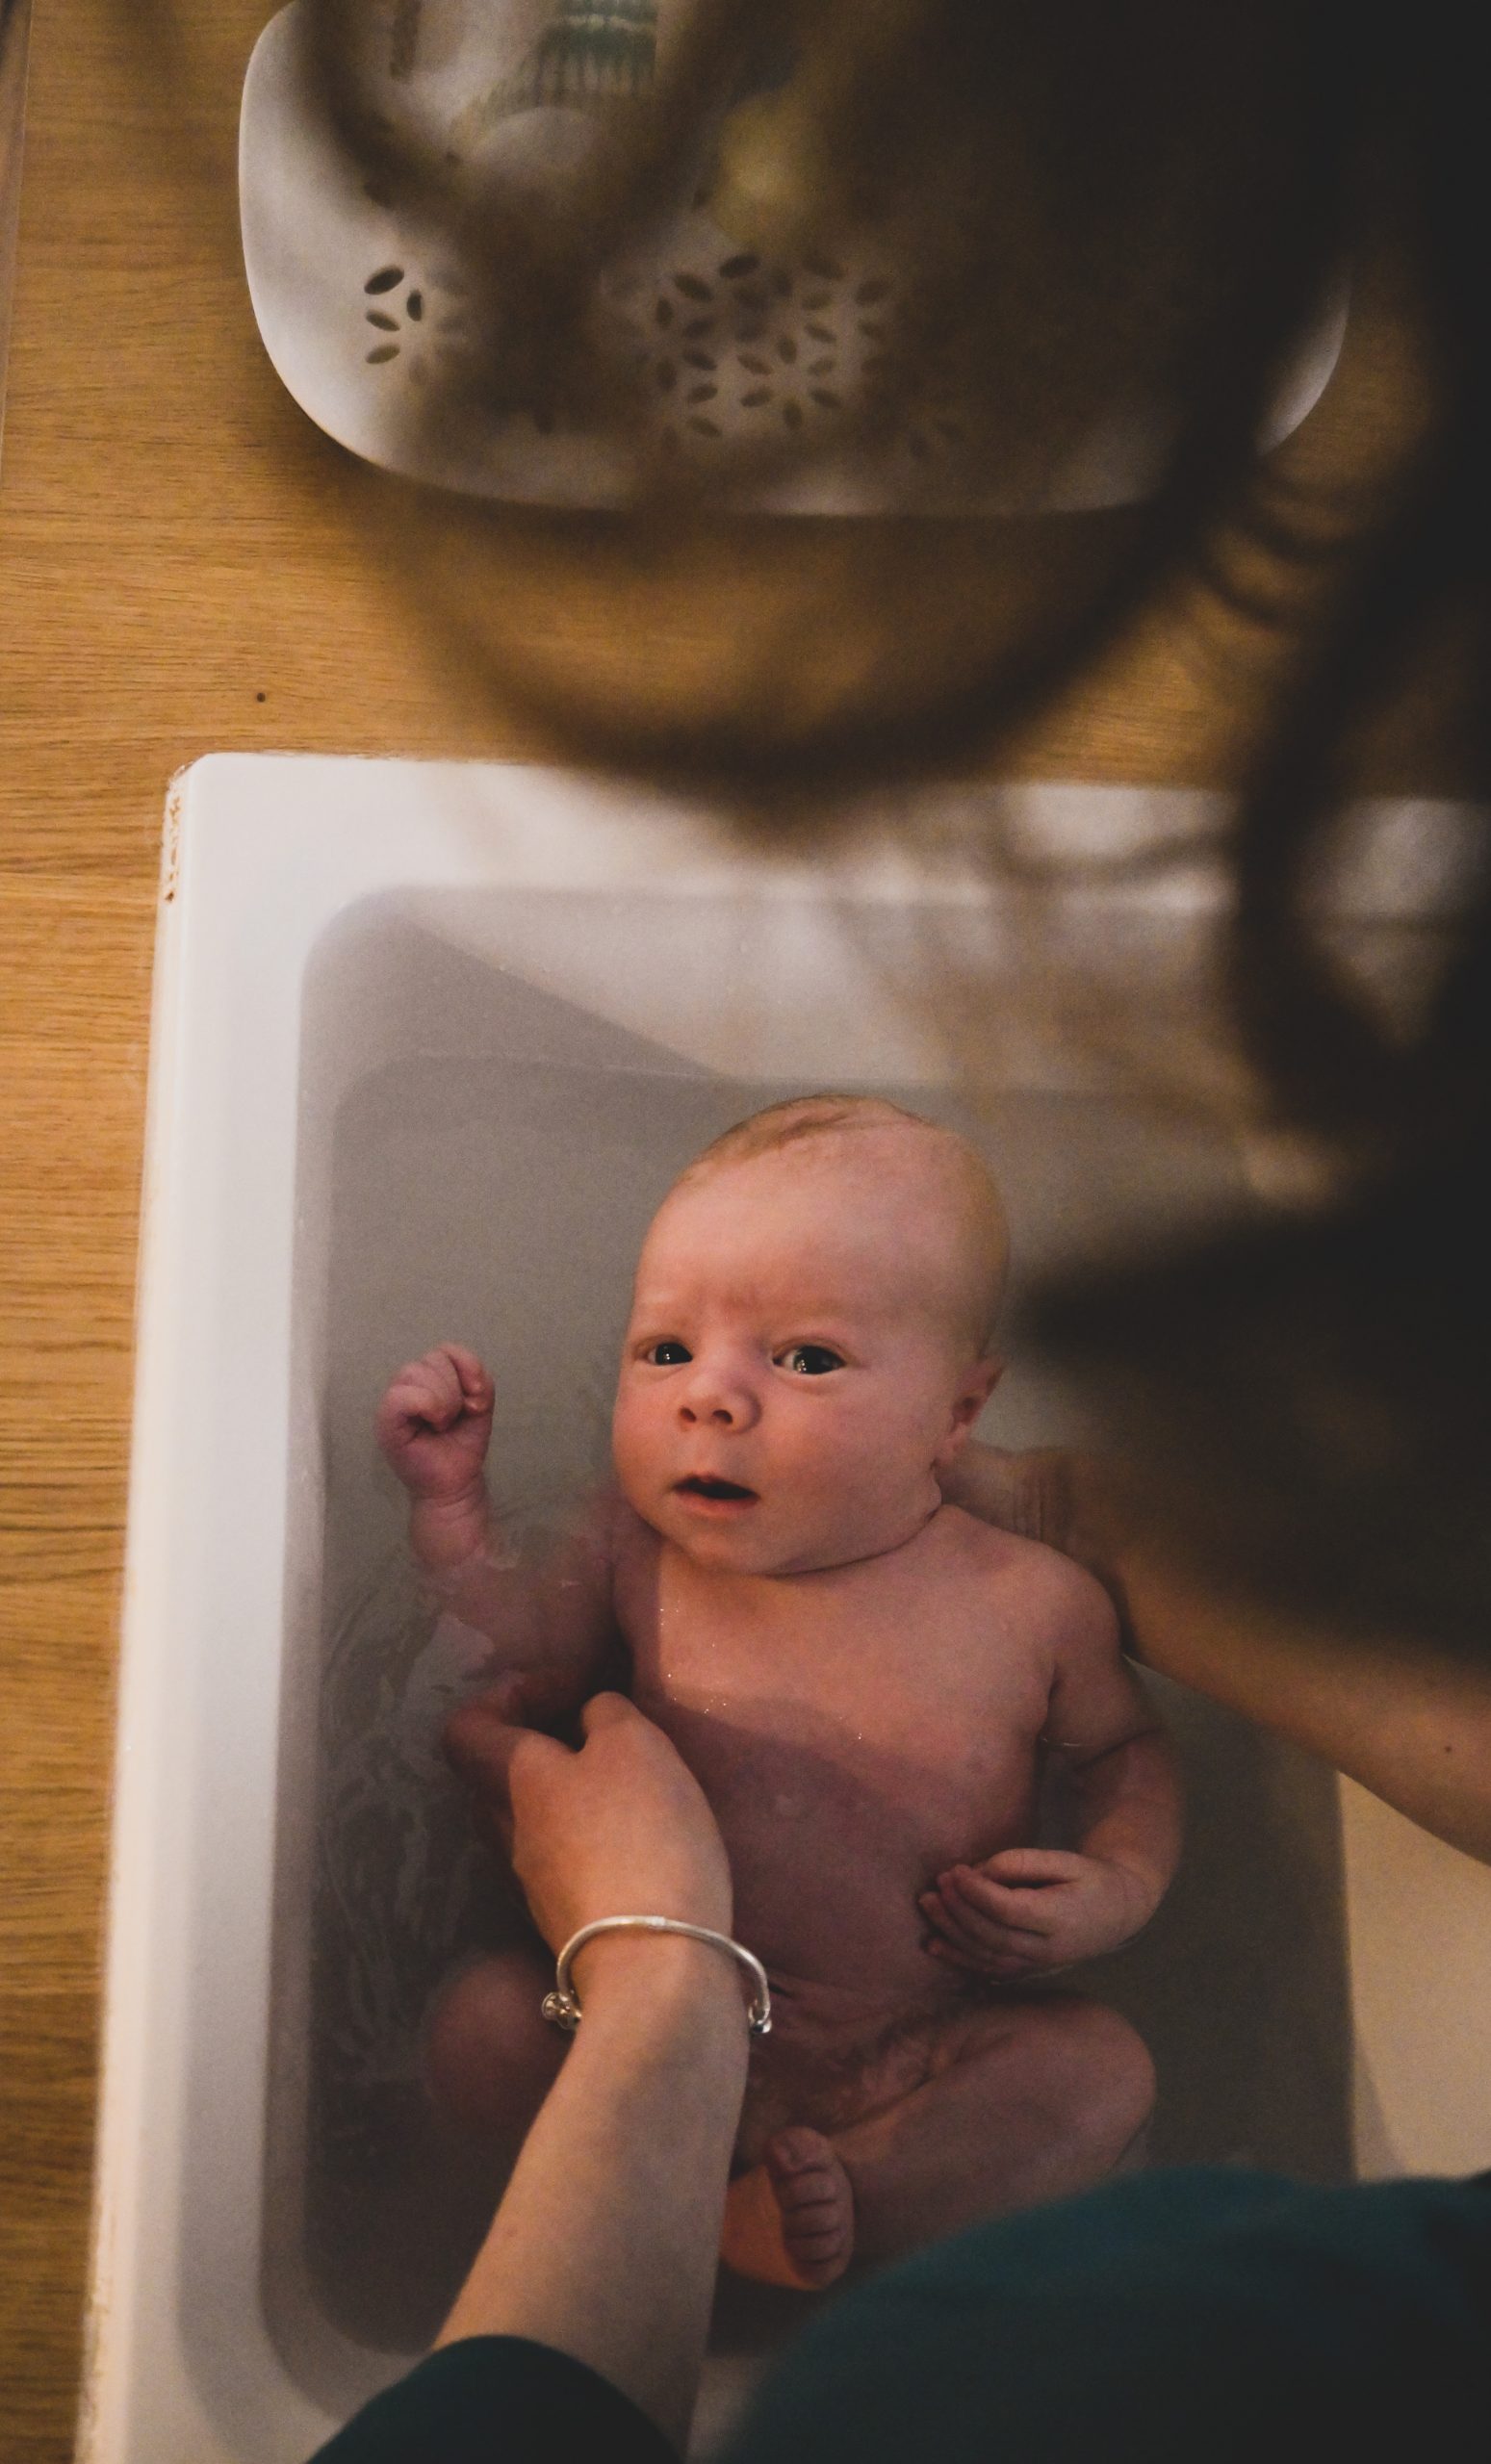 séance photo famille, bébé au bain, vie de famille